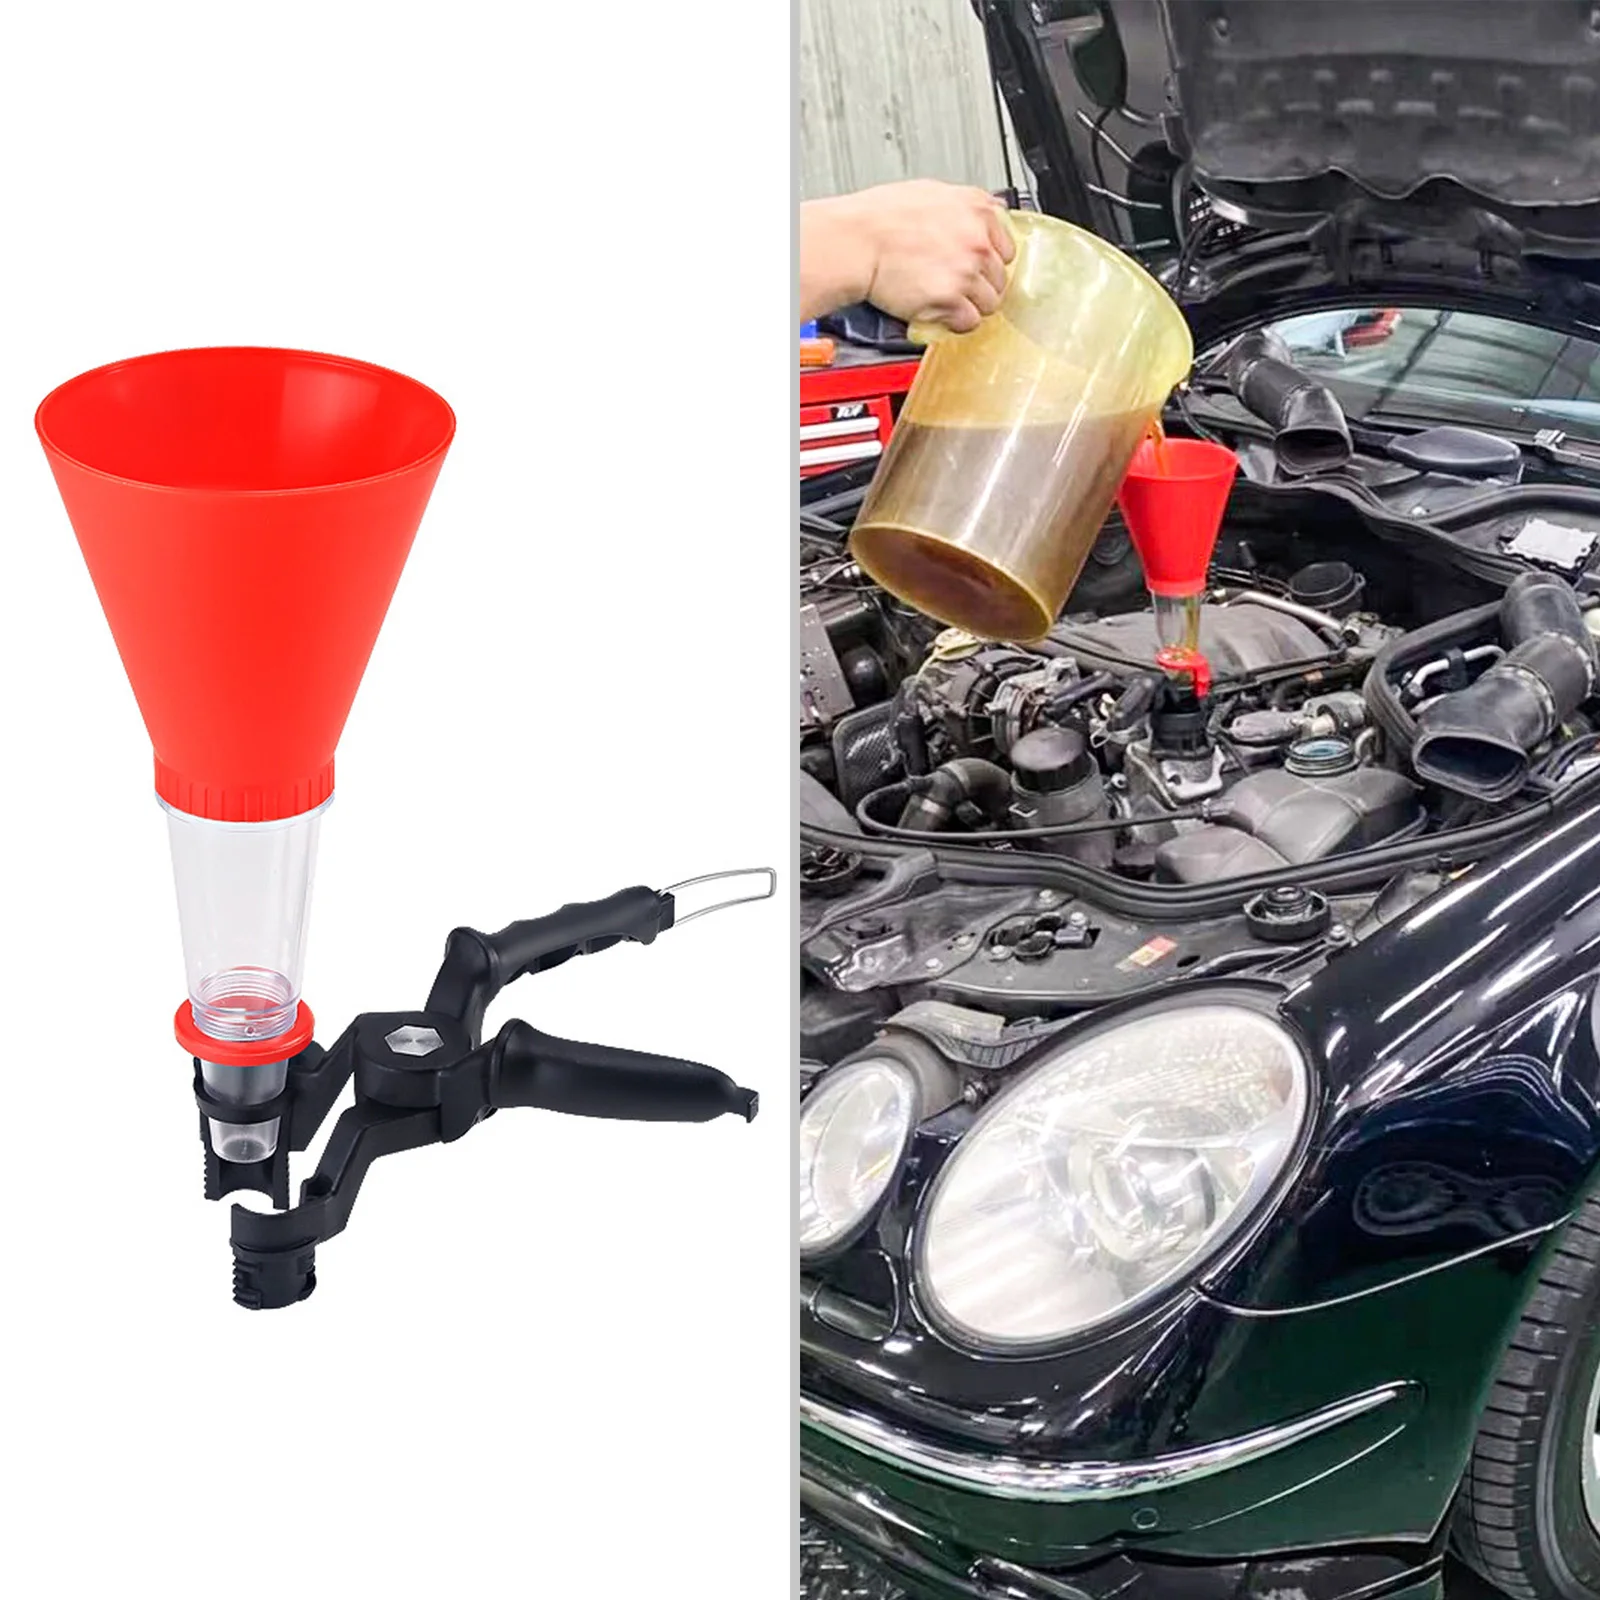 

Universal Car Engine Oil Funnel Kit Spillproof Oil Filter Tool Set Adjustable Priming Funnel Filling Oil Charging System Device